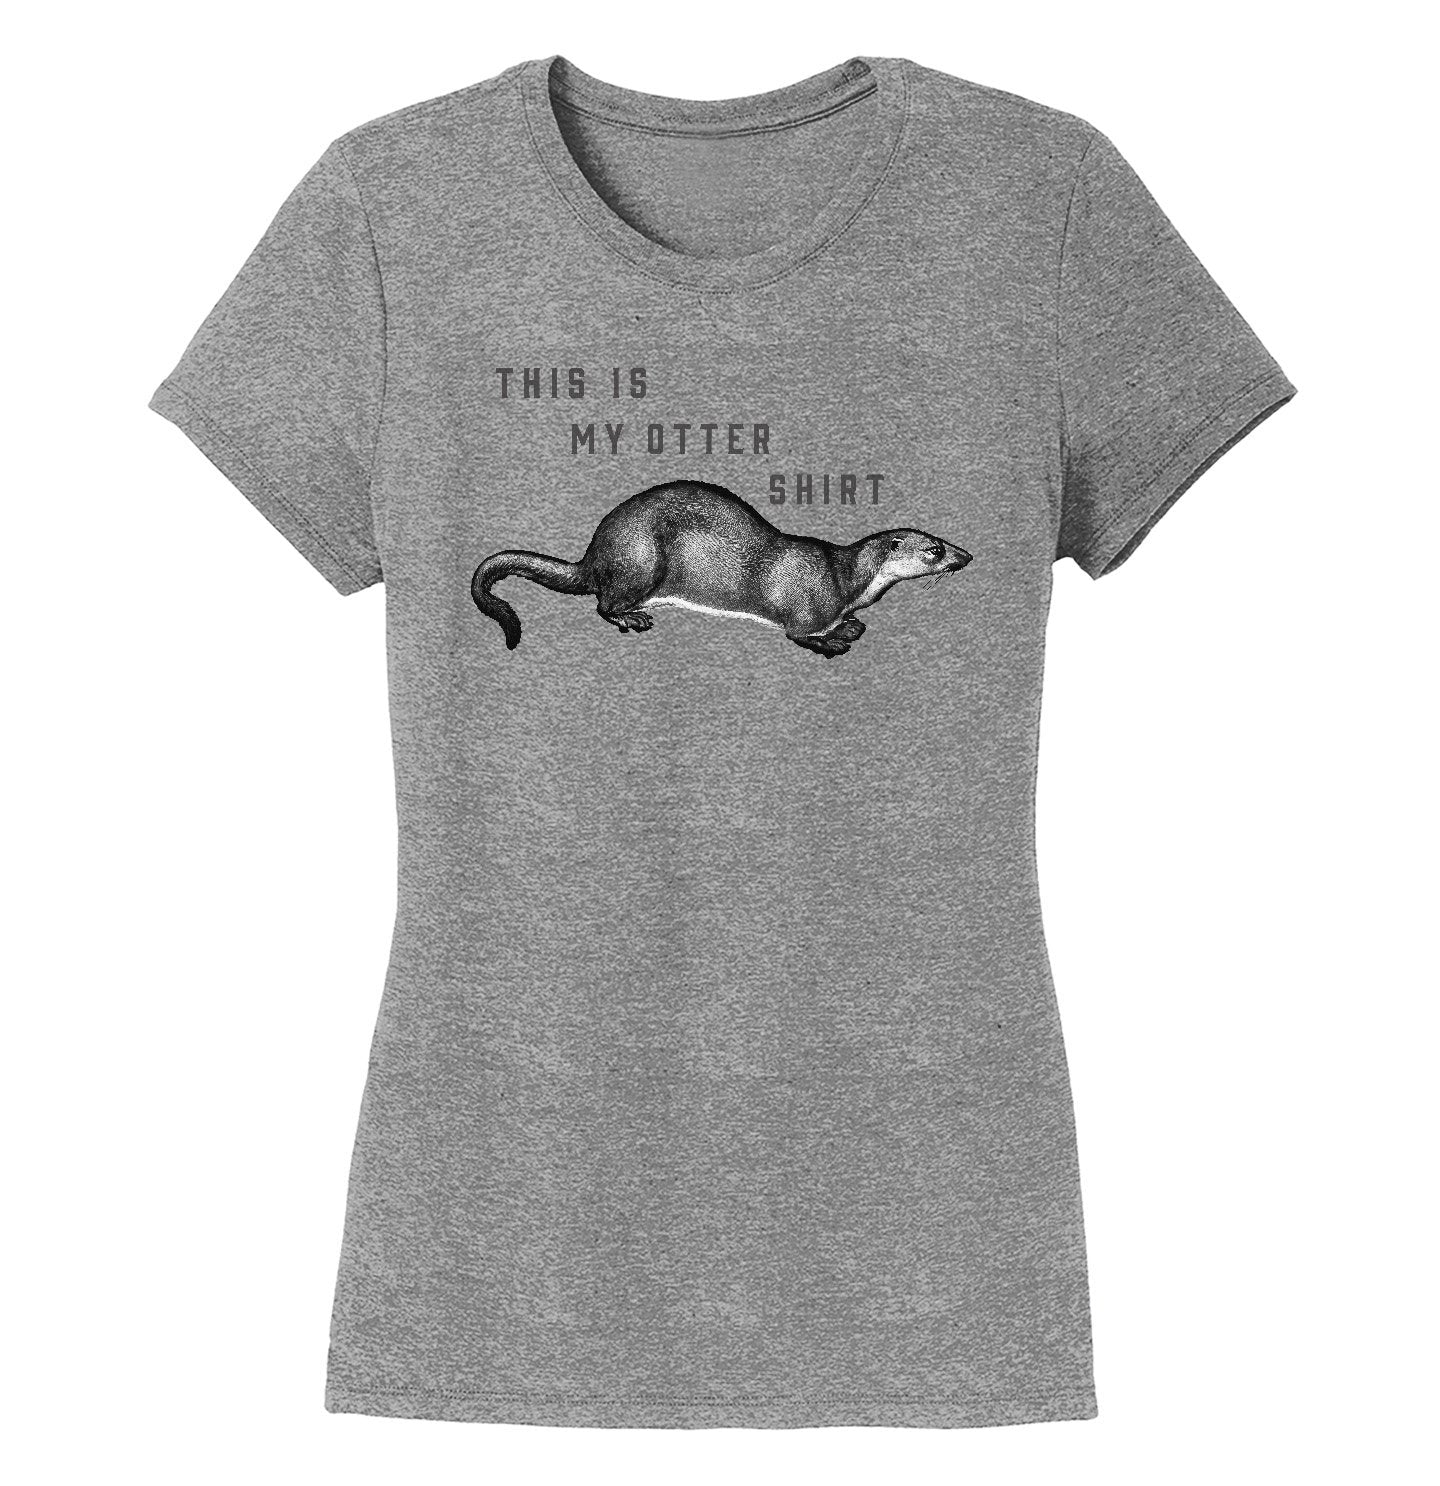 My Otter Shirt - Women's Tri-Blend T-Shirt